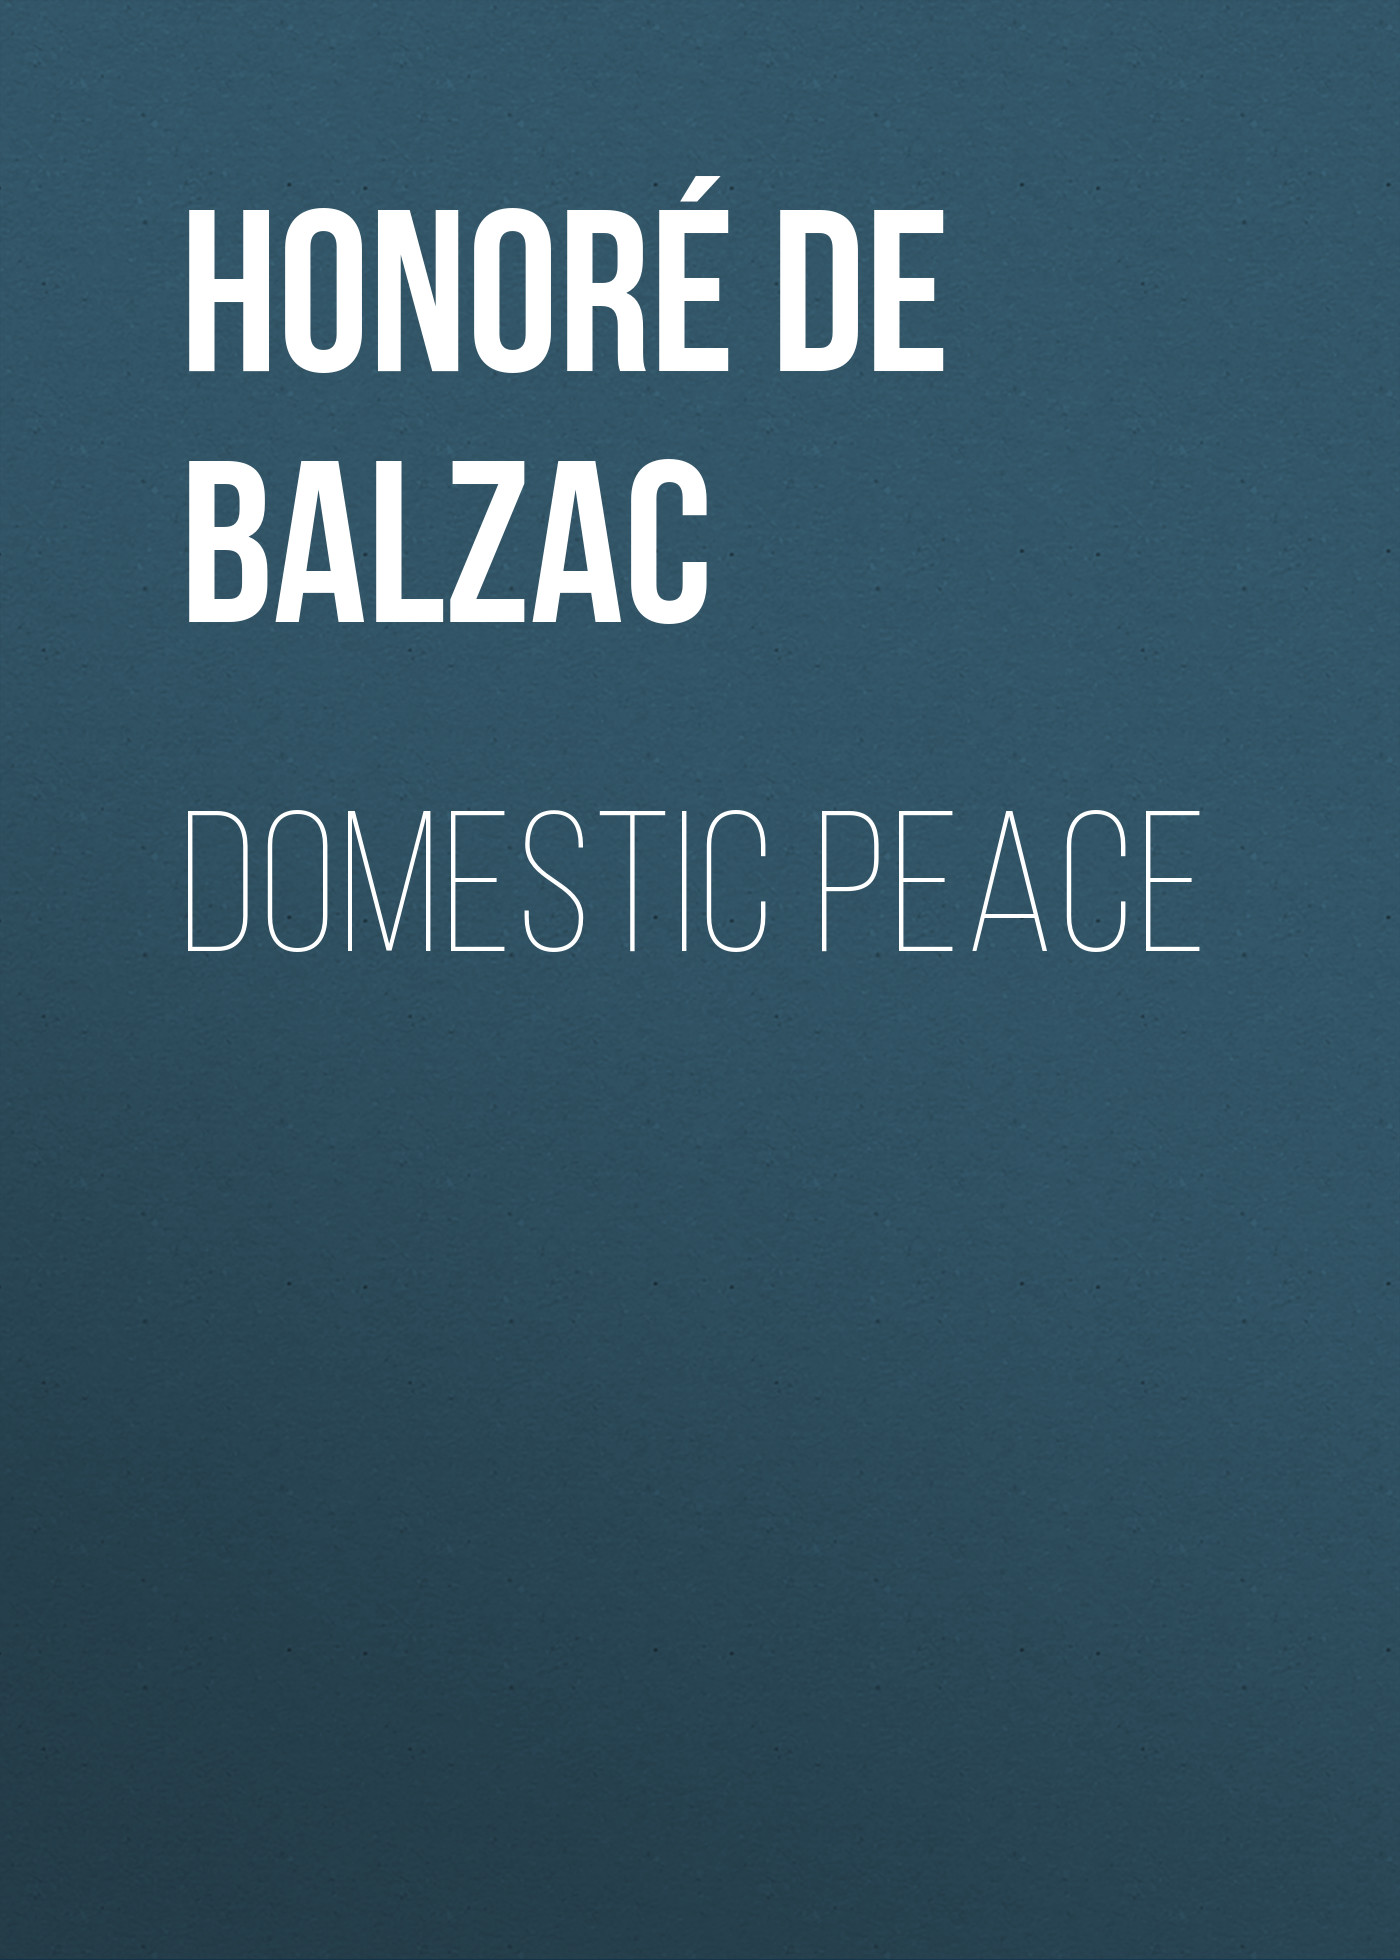 Книга Domestic Peace из серии , созданная Honoré Balzac, может относится к жанру Литература 19 века, Зарубежная старинная литература, Зарубежная классика. Стоимость электронной книги Domestic Peace с идентификатором 25020723 составляет 0 руб.